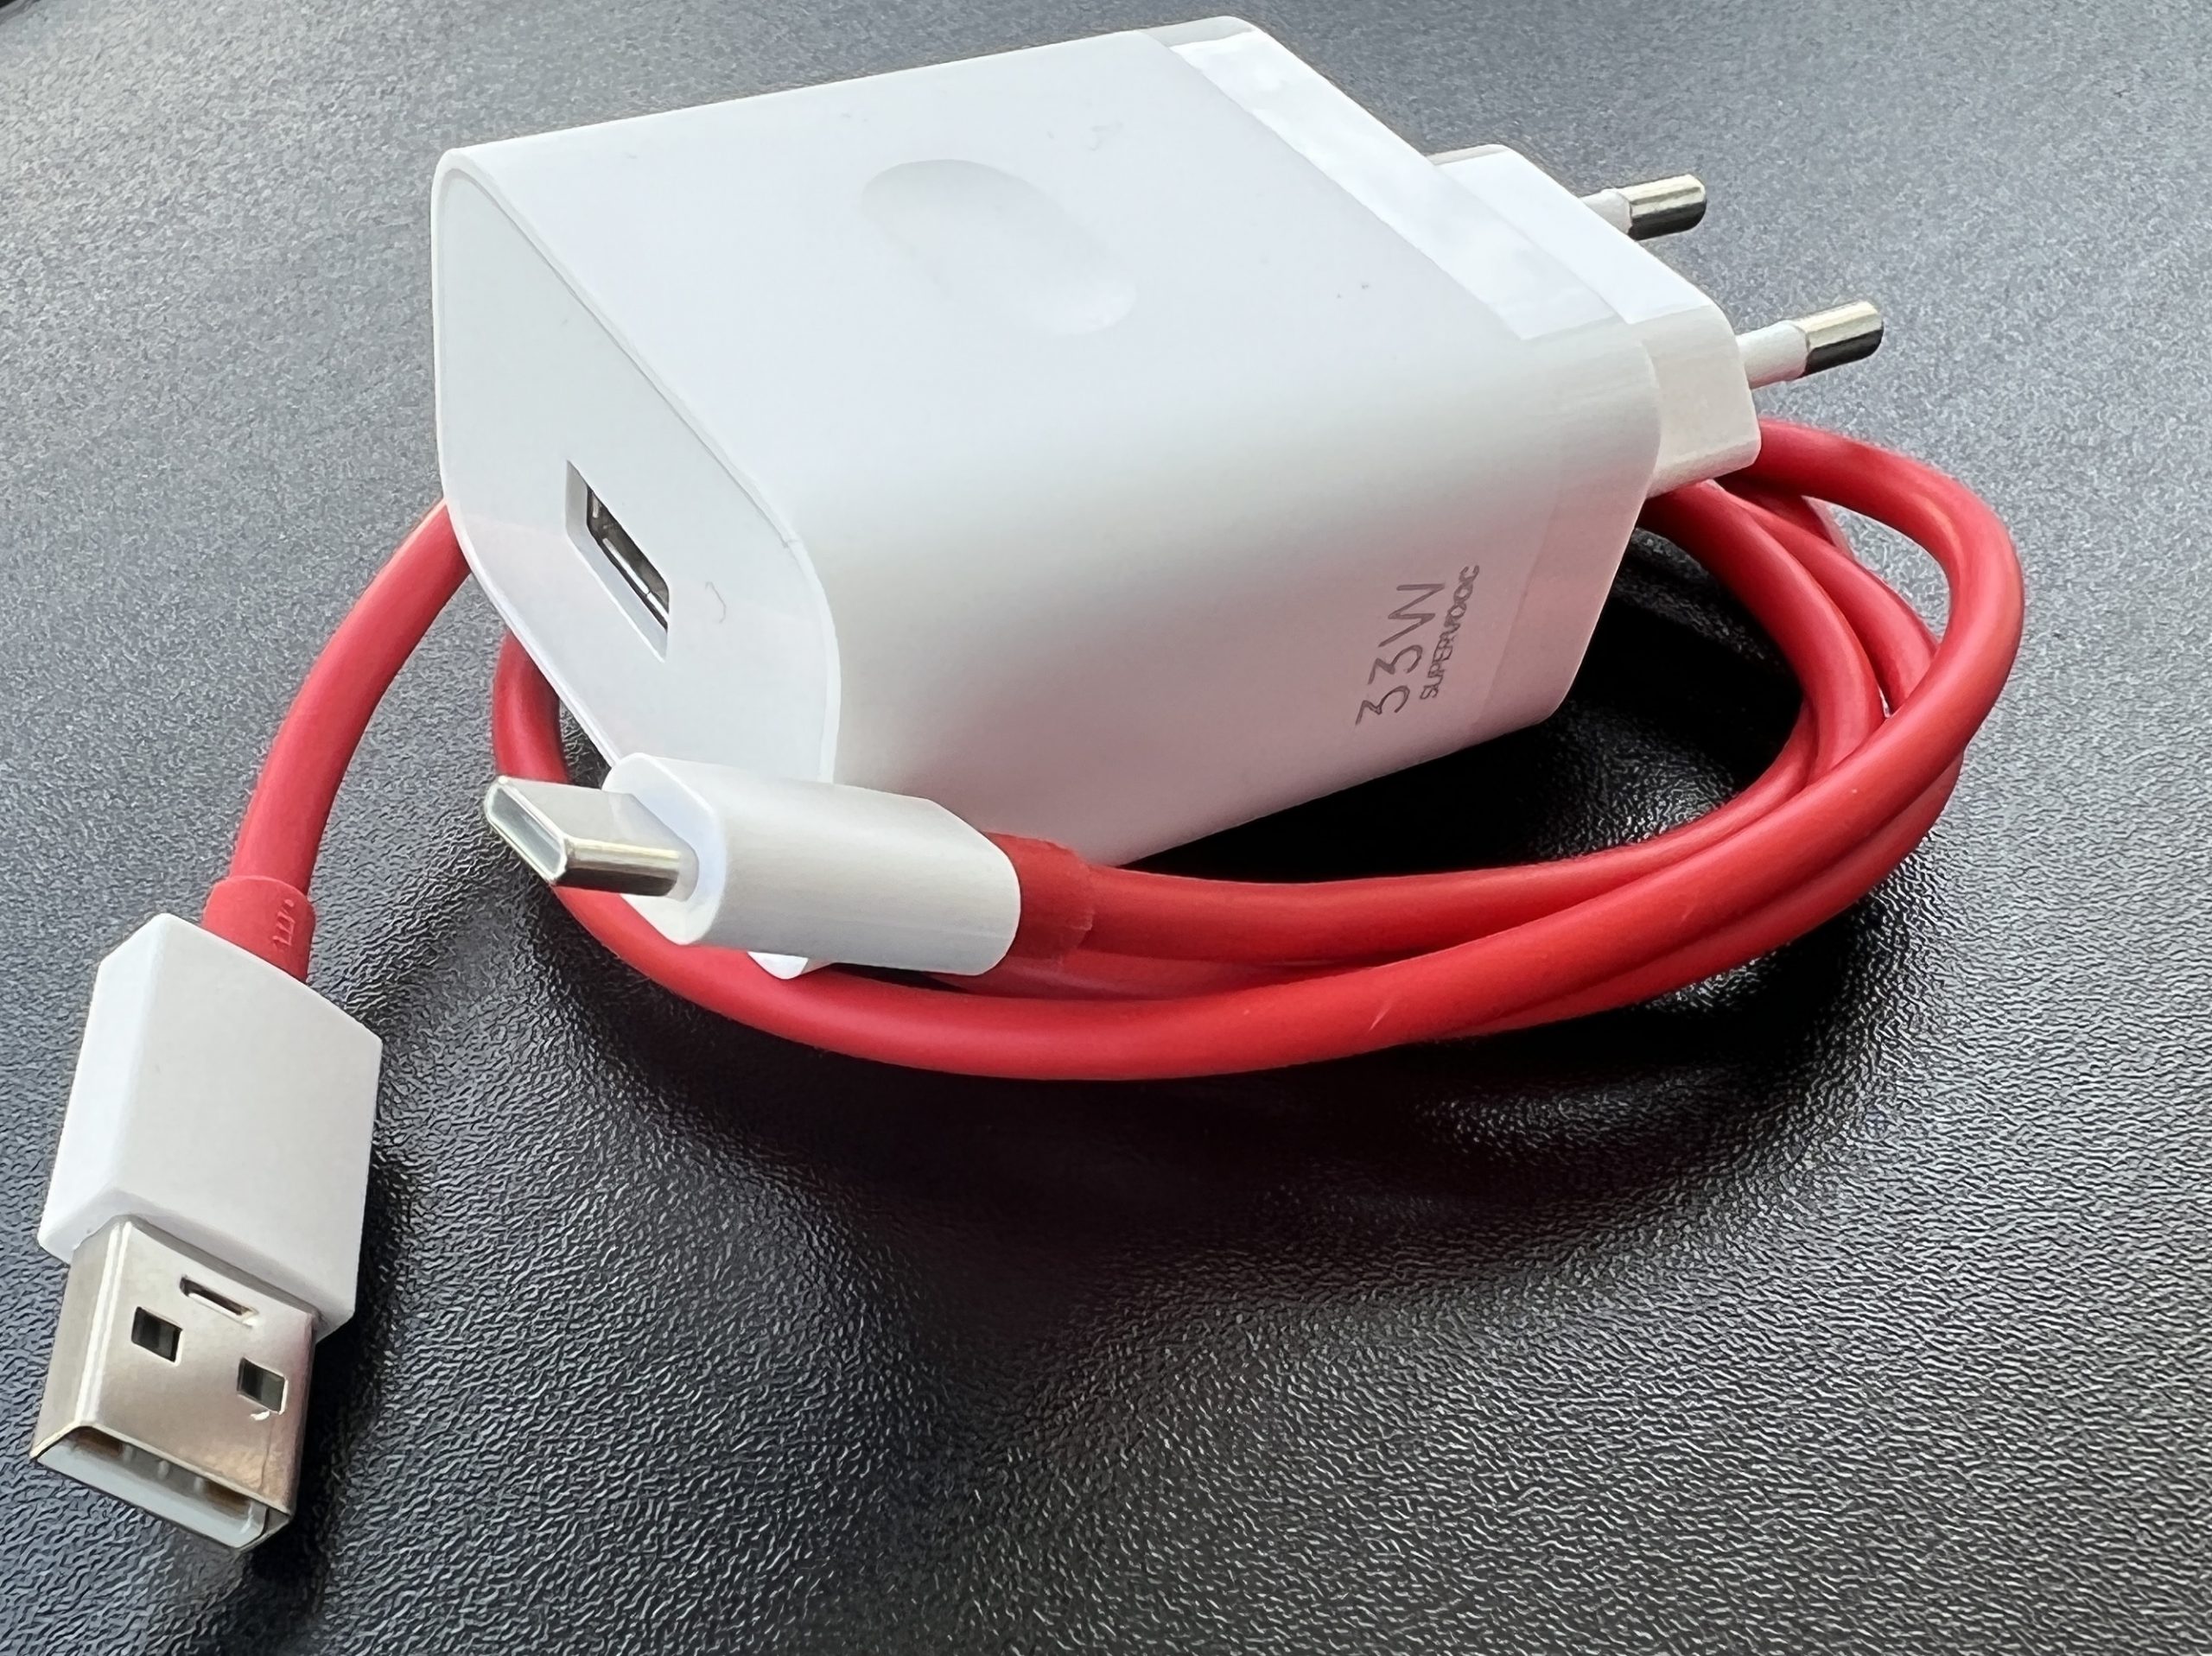 Nord CE 2 Lite 5G:n mukana toimitettava 33 watin pikalaturi on varustettu USB-A-liitännällä.